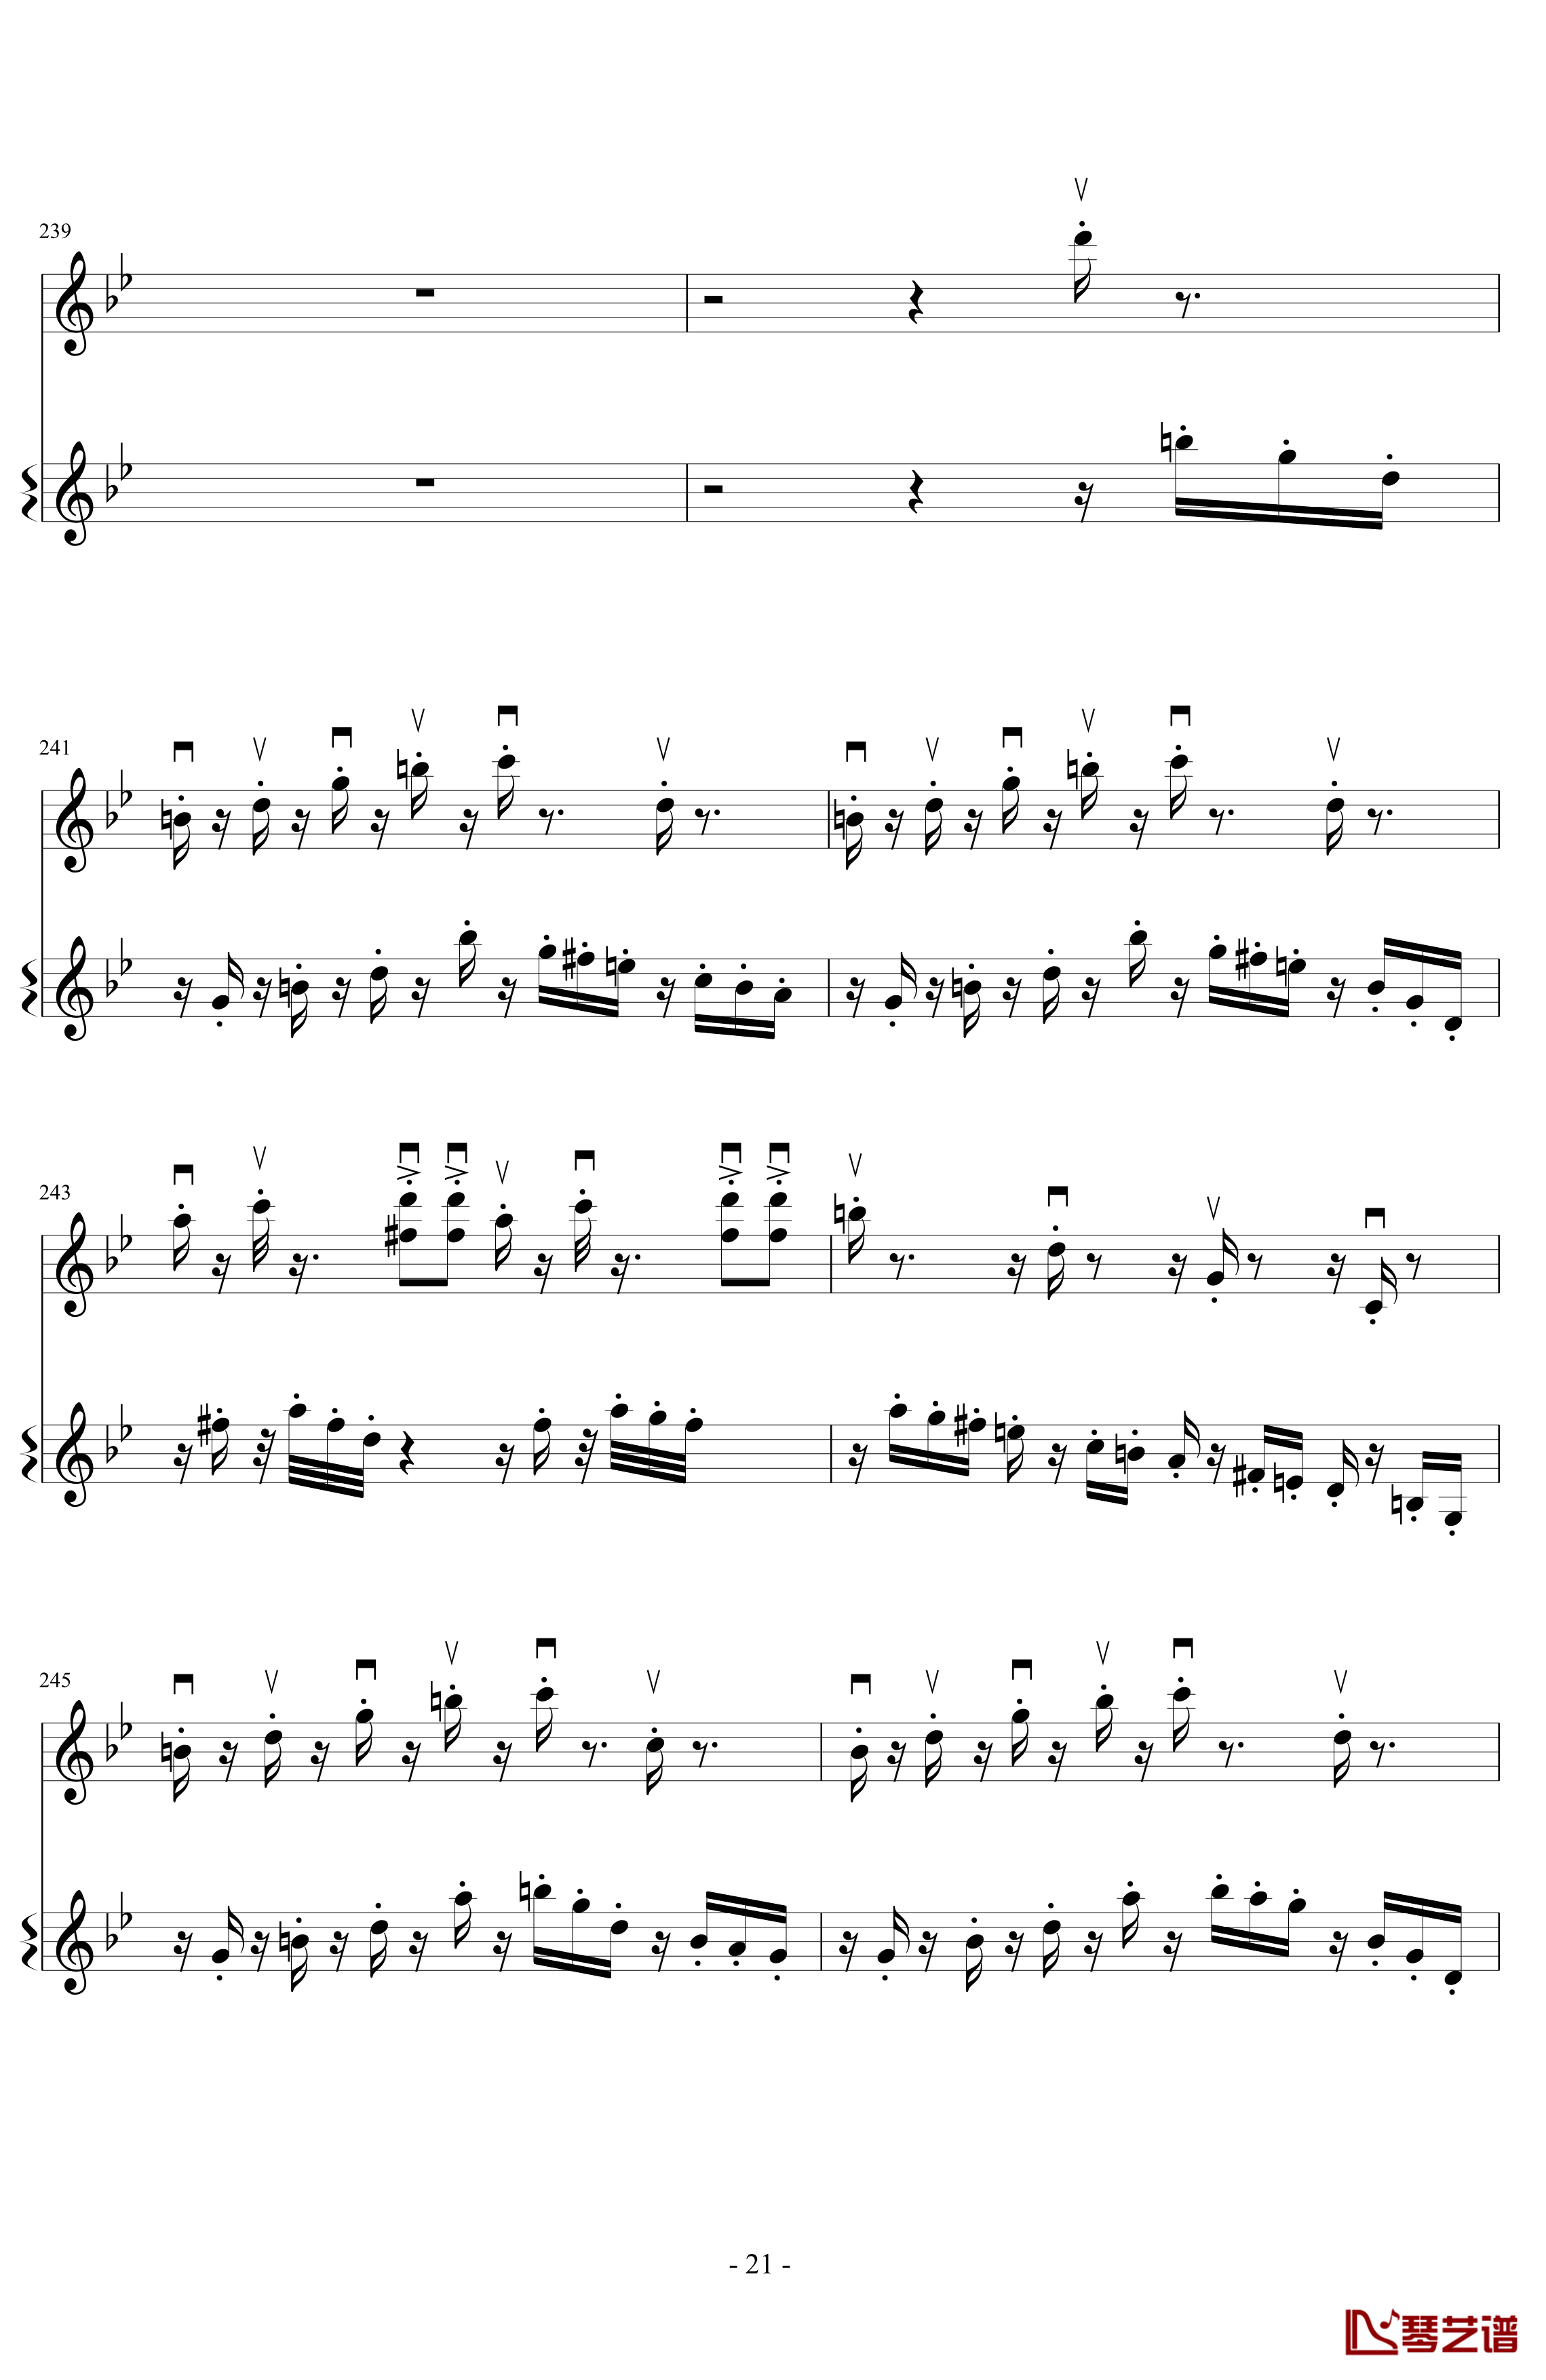 意大利国歌变奏曲钢琴谱-DXF21